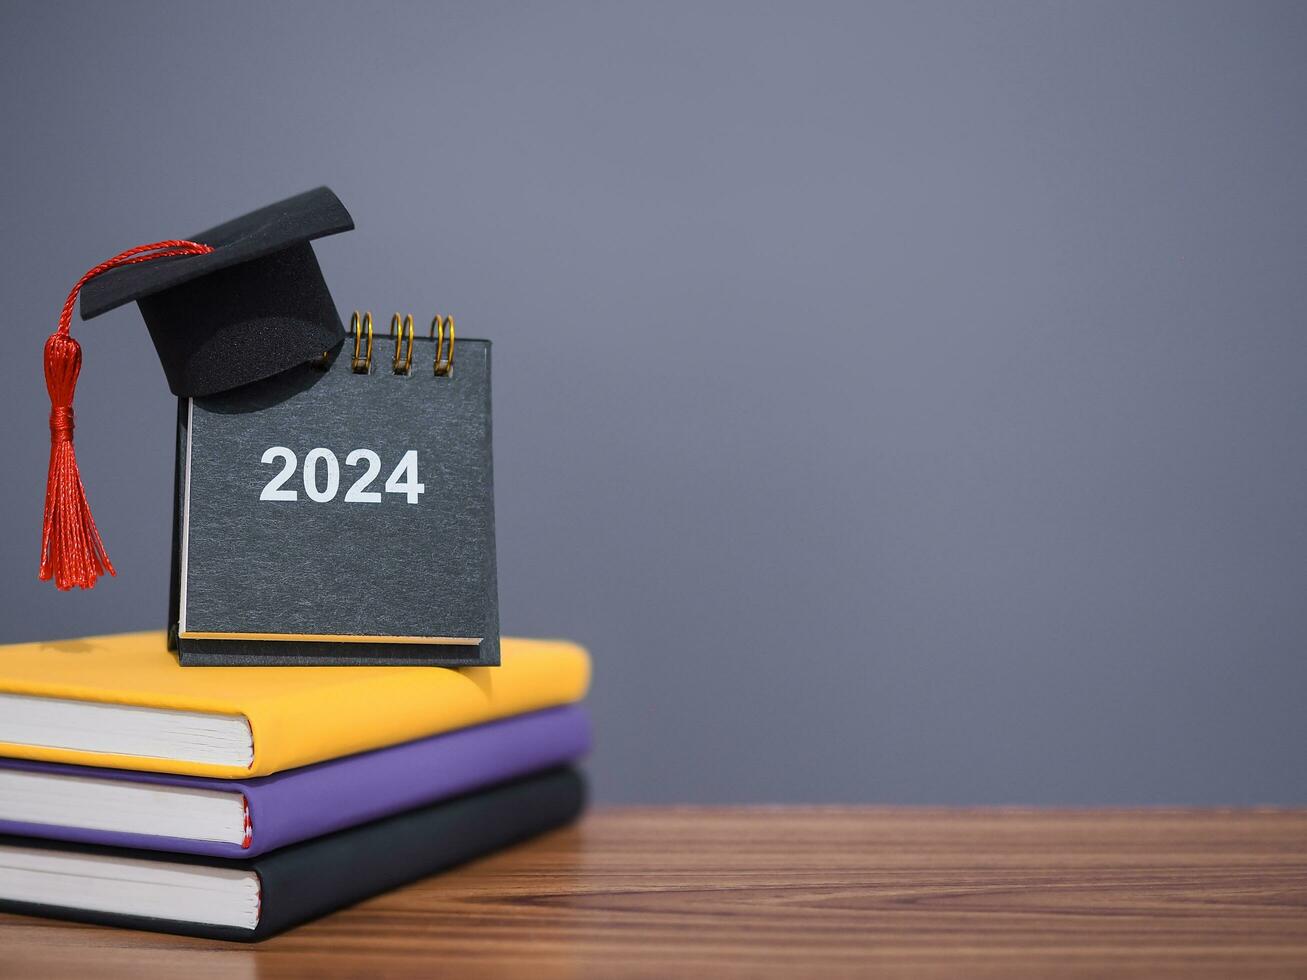 étude buts, 2024 bureau calendrier avec l'obtention du diplôme chapeau sur coloré relié livre. le concept pour résolution, but, action, planification, et gérer temps à Succès diplômé dans Nouveau année 2024 photo